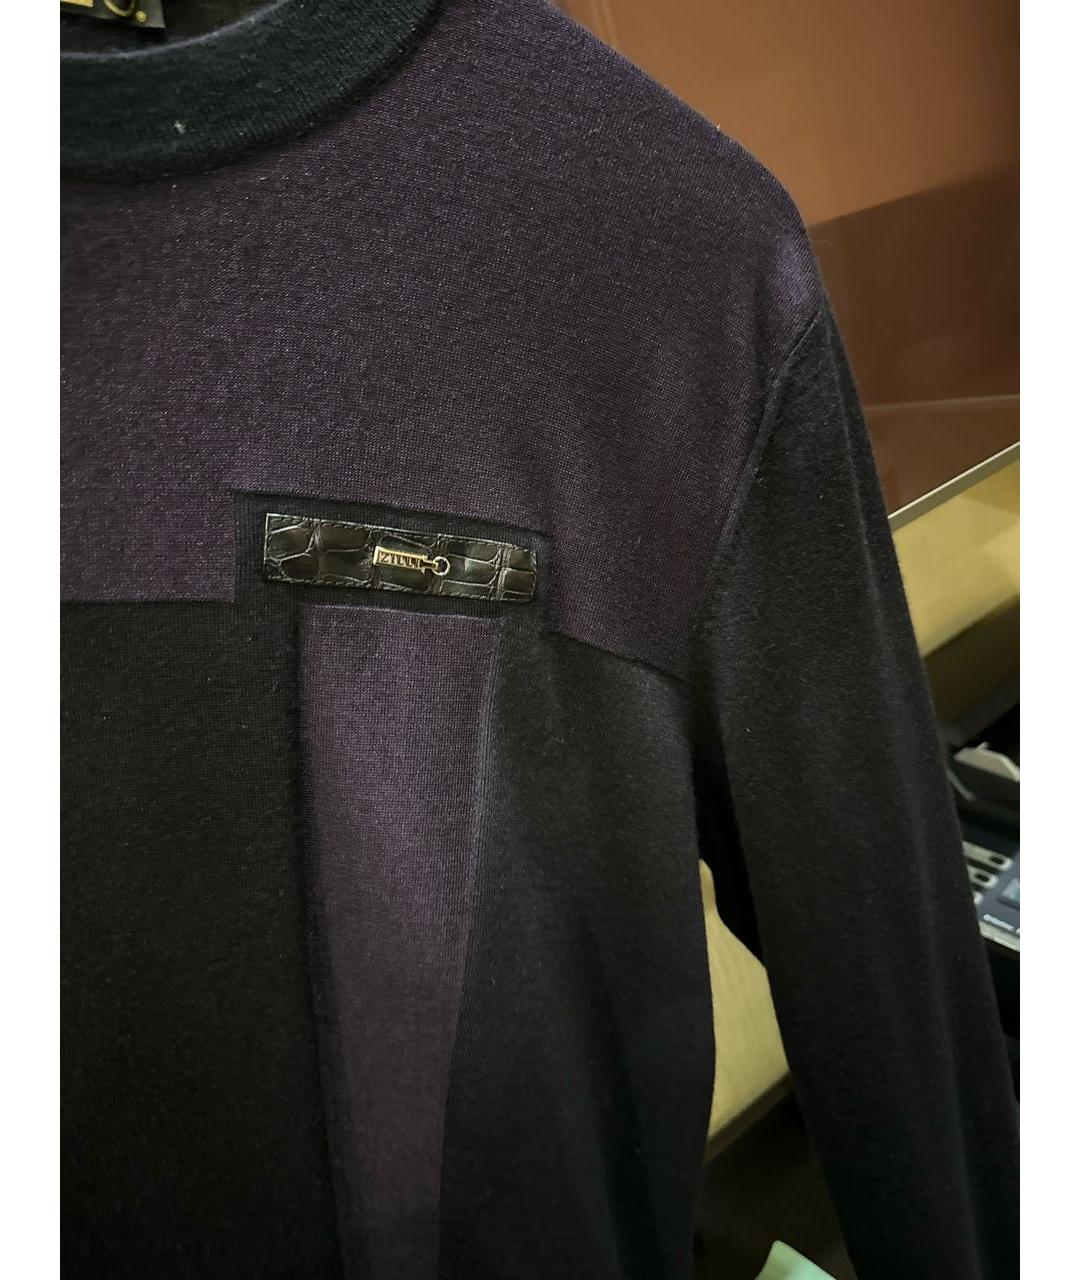 ZILLI Темно-синий кашемировый джемпер / свитер, фото 3